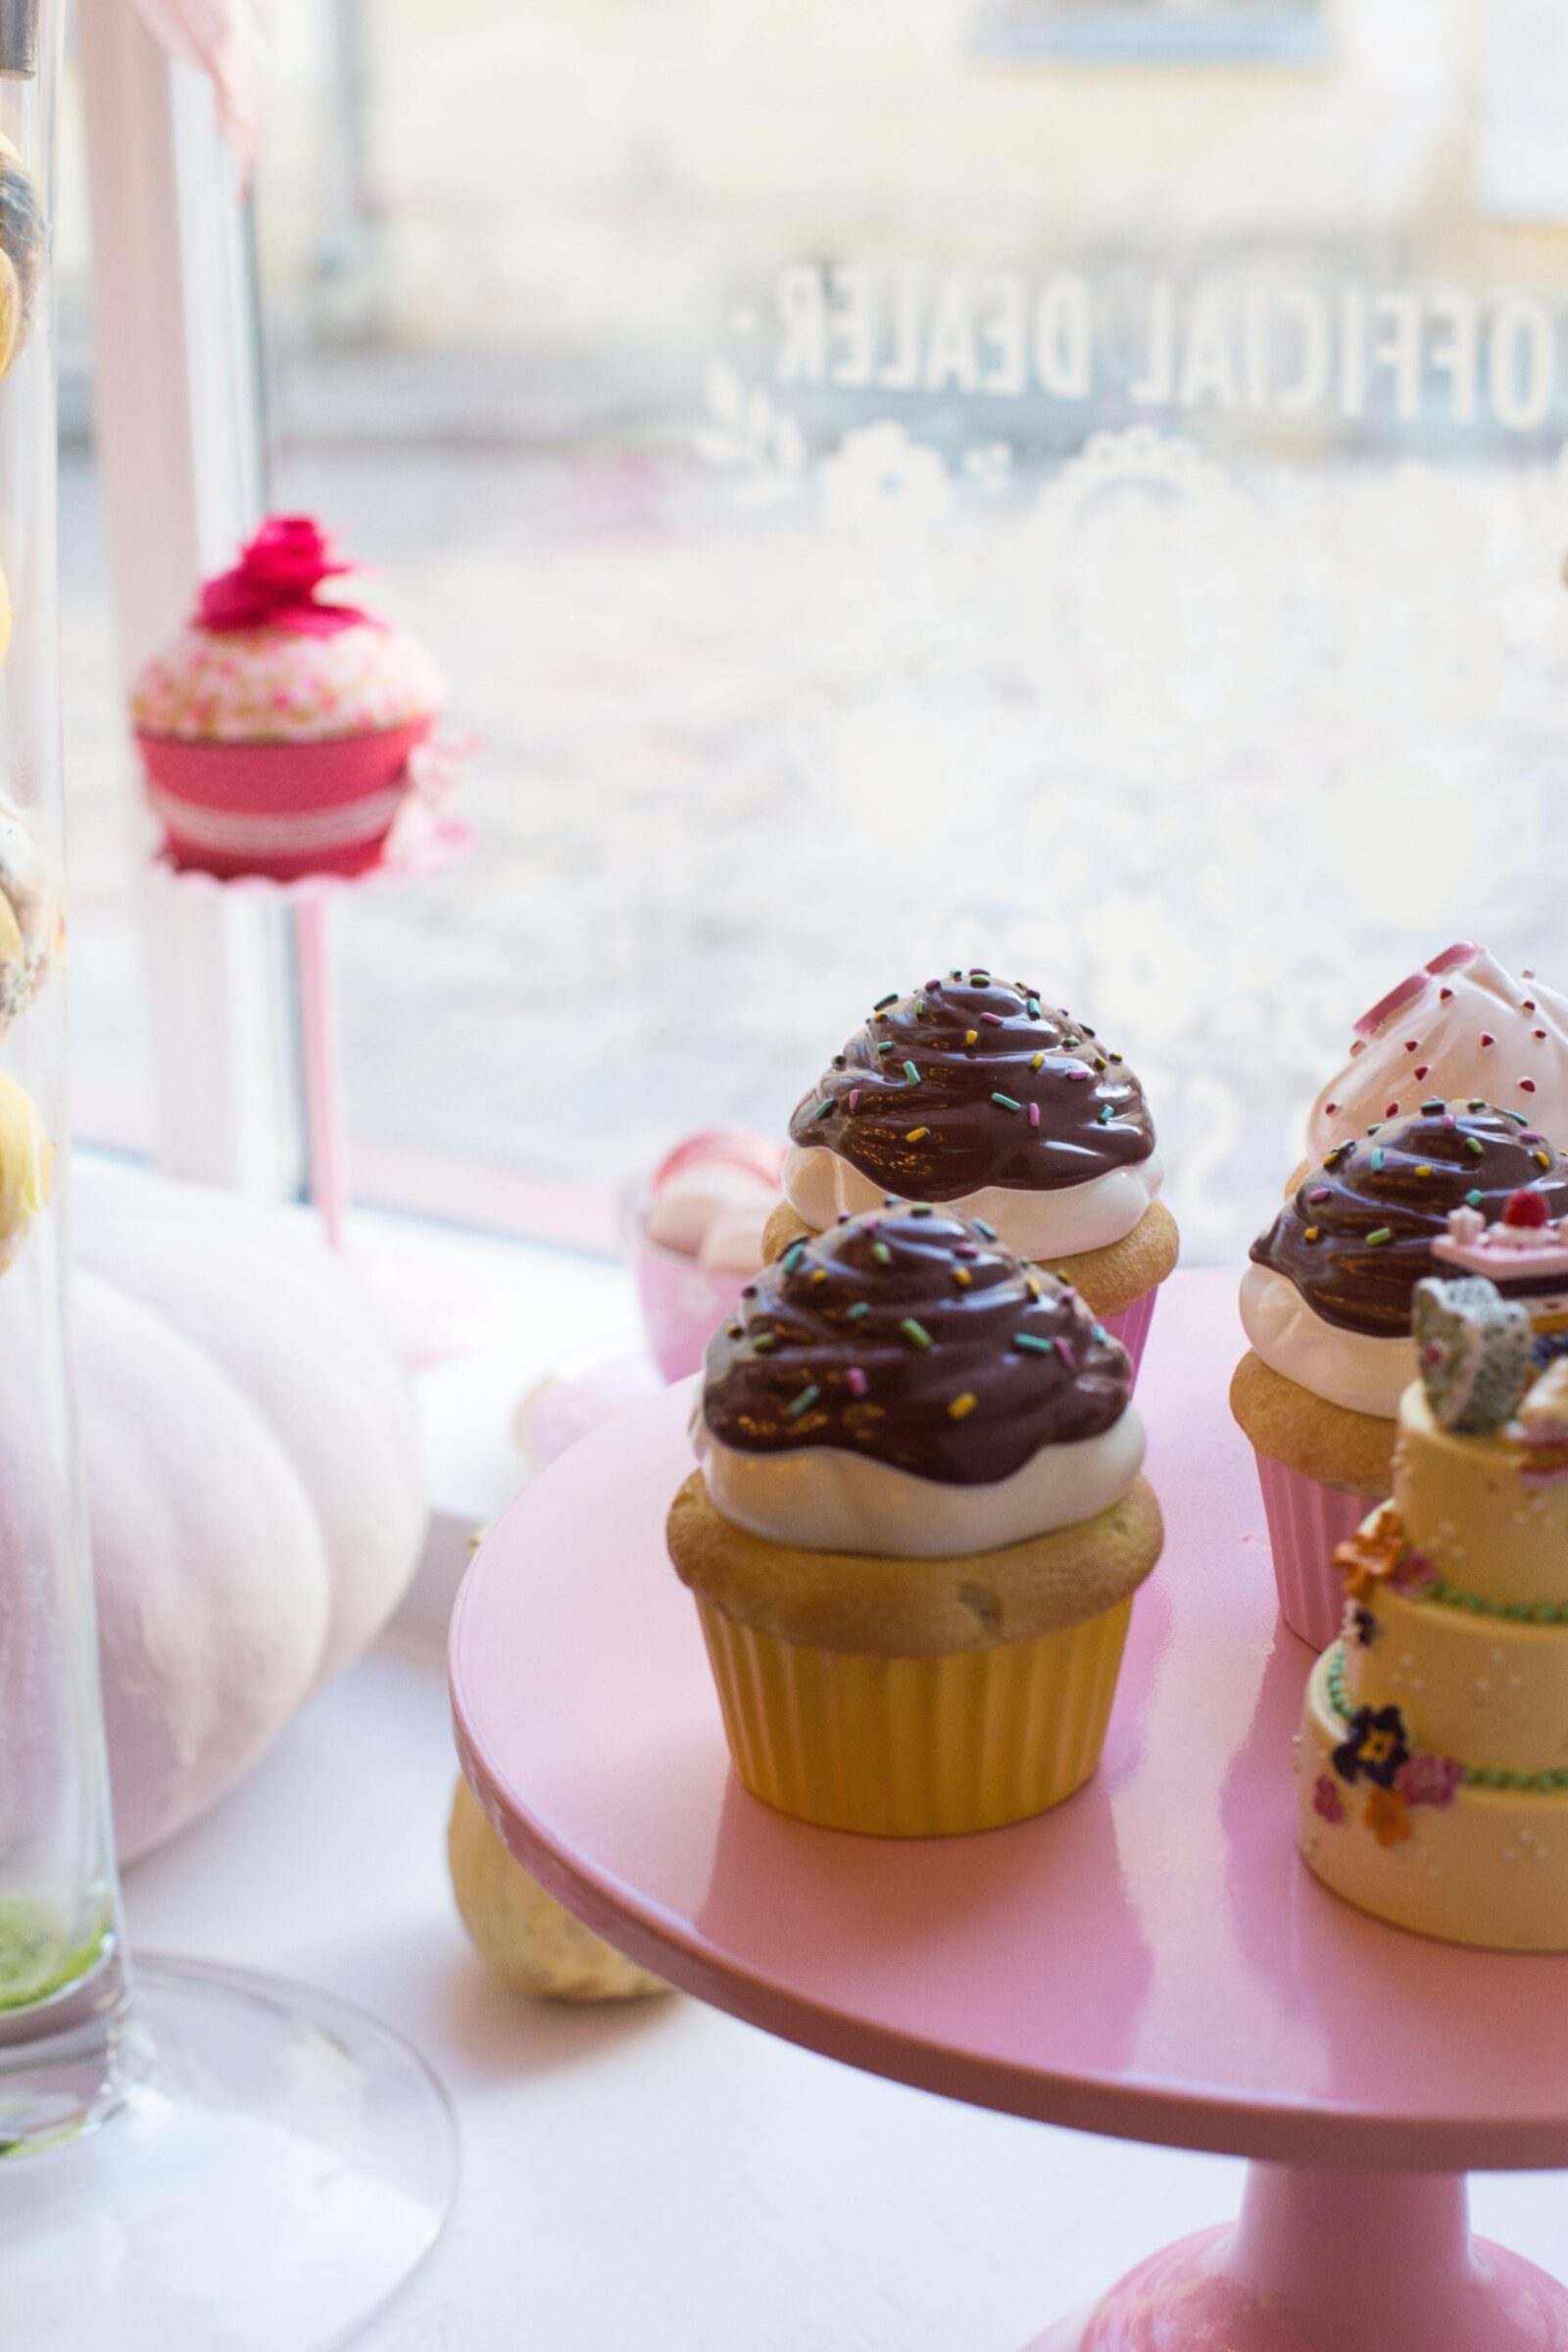 Start a Cupcake Business